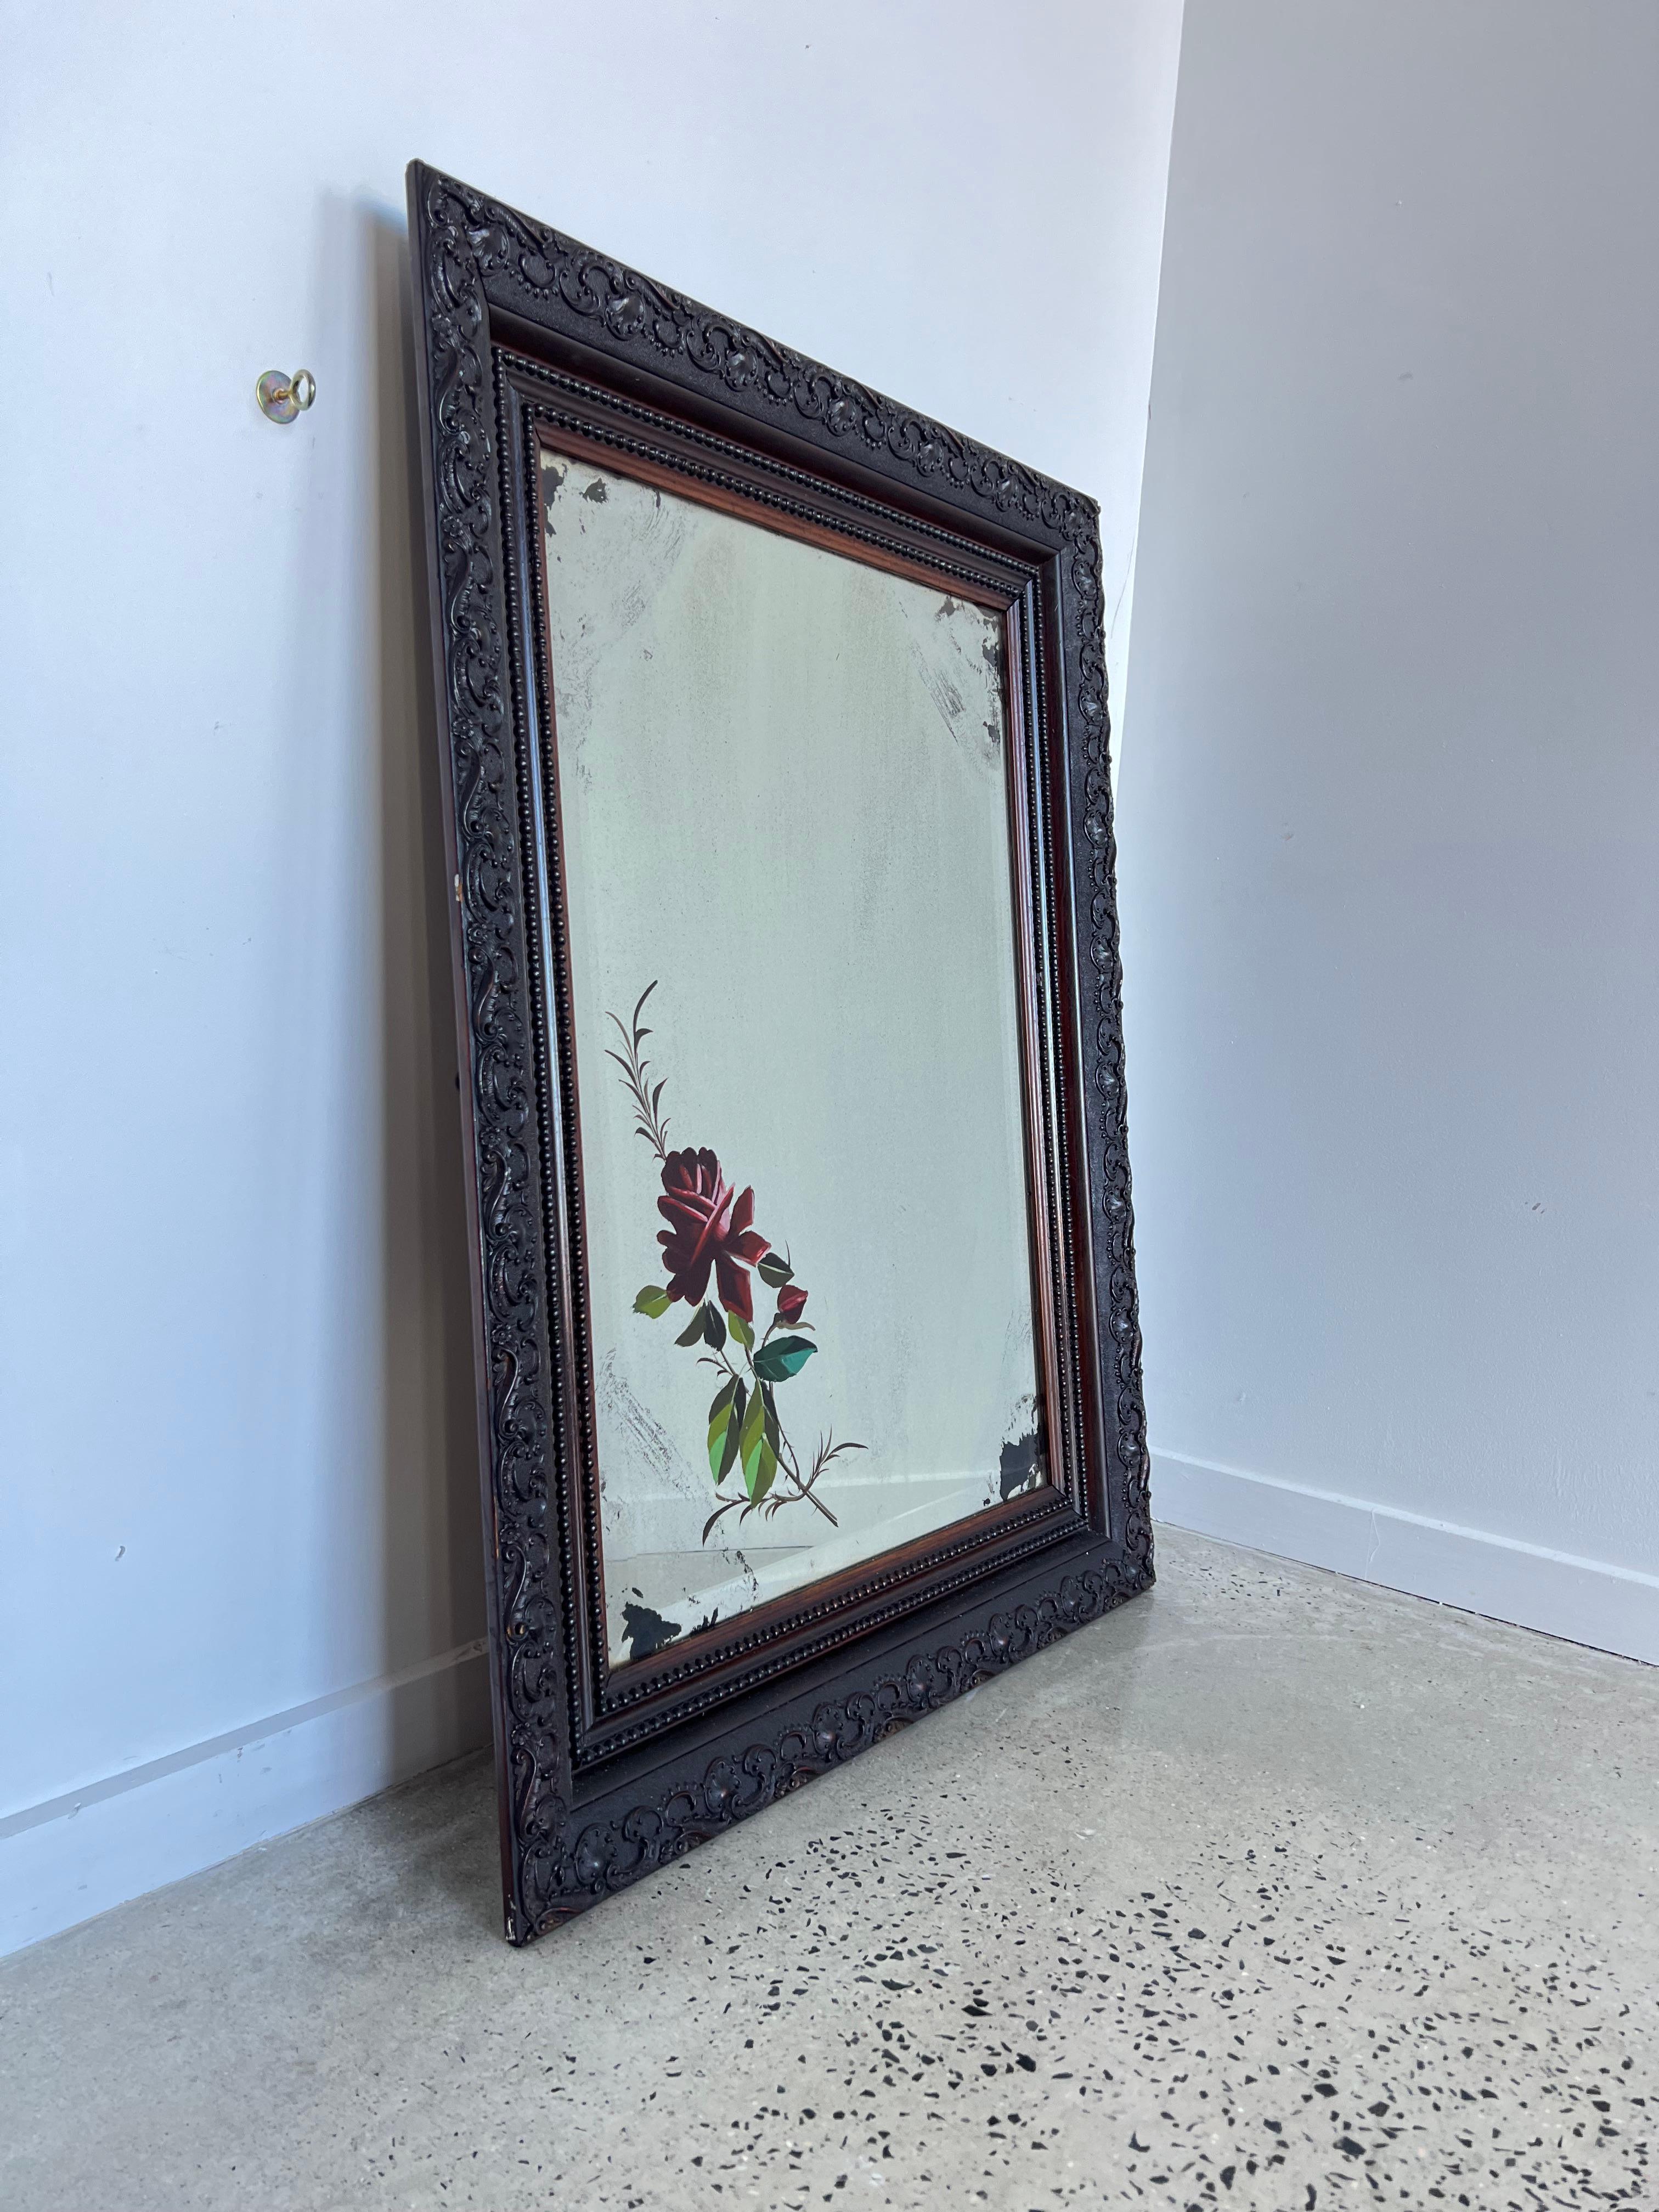 1950er Jahre Nussbaum geschnitzt Rahmen Italienisch Kunst Glasspiegel.
Schöner Spiegel mit komplett geschnitztem Rahmen, handgemalte Blumenkunstwerke auf dem Glas.
 